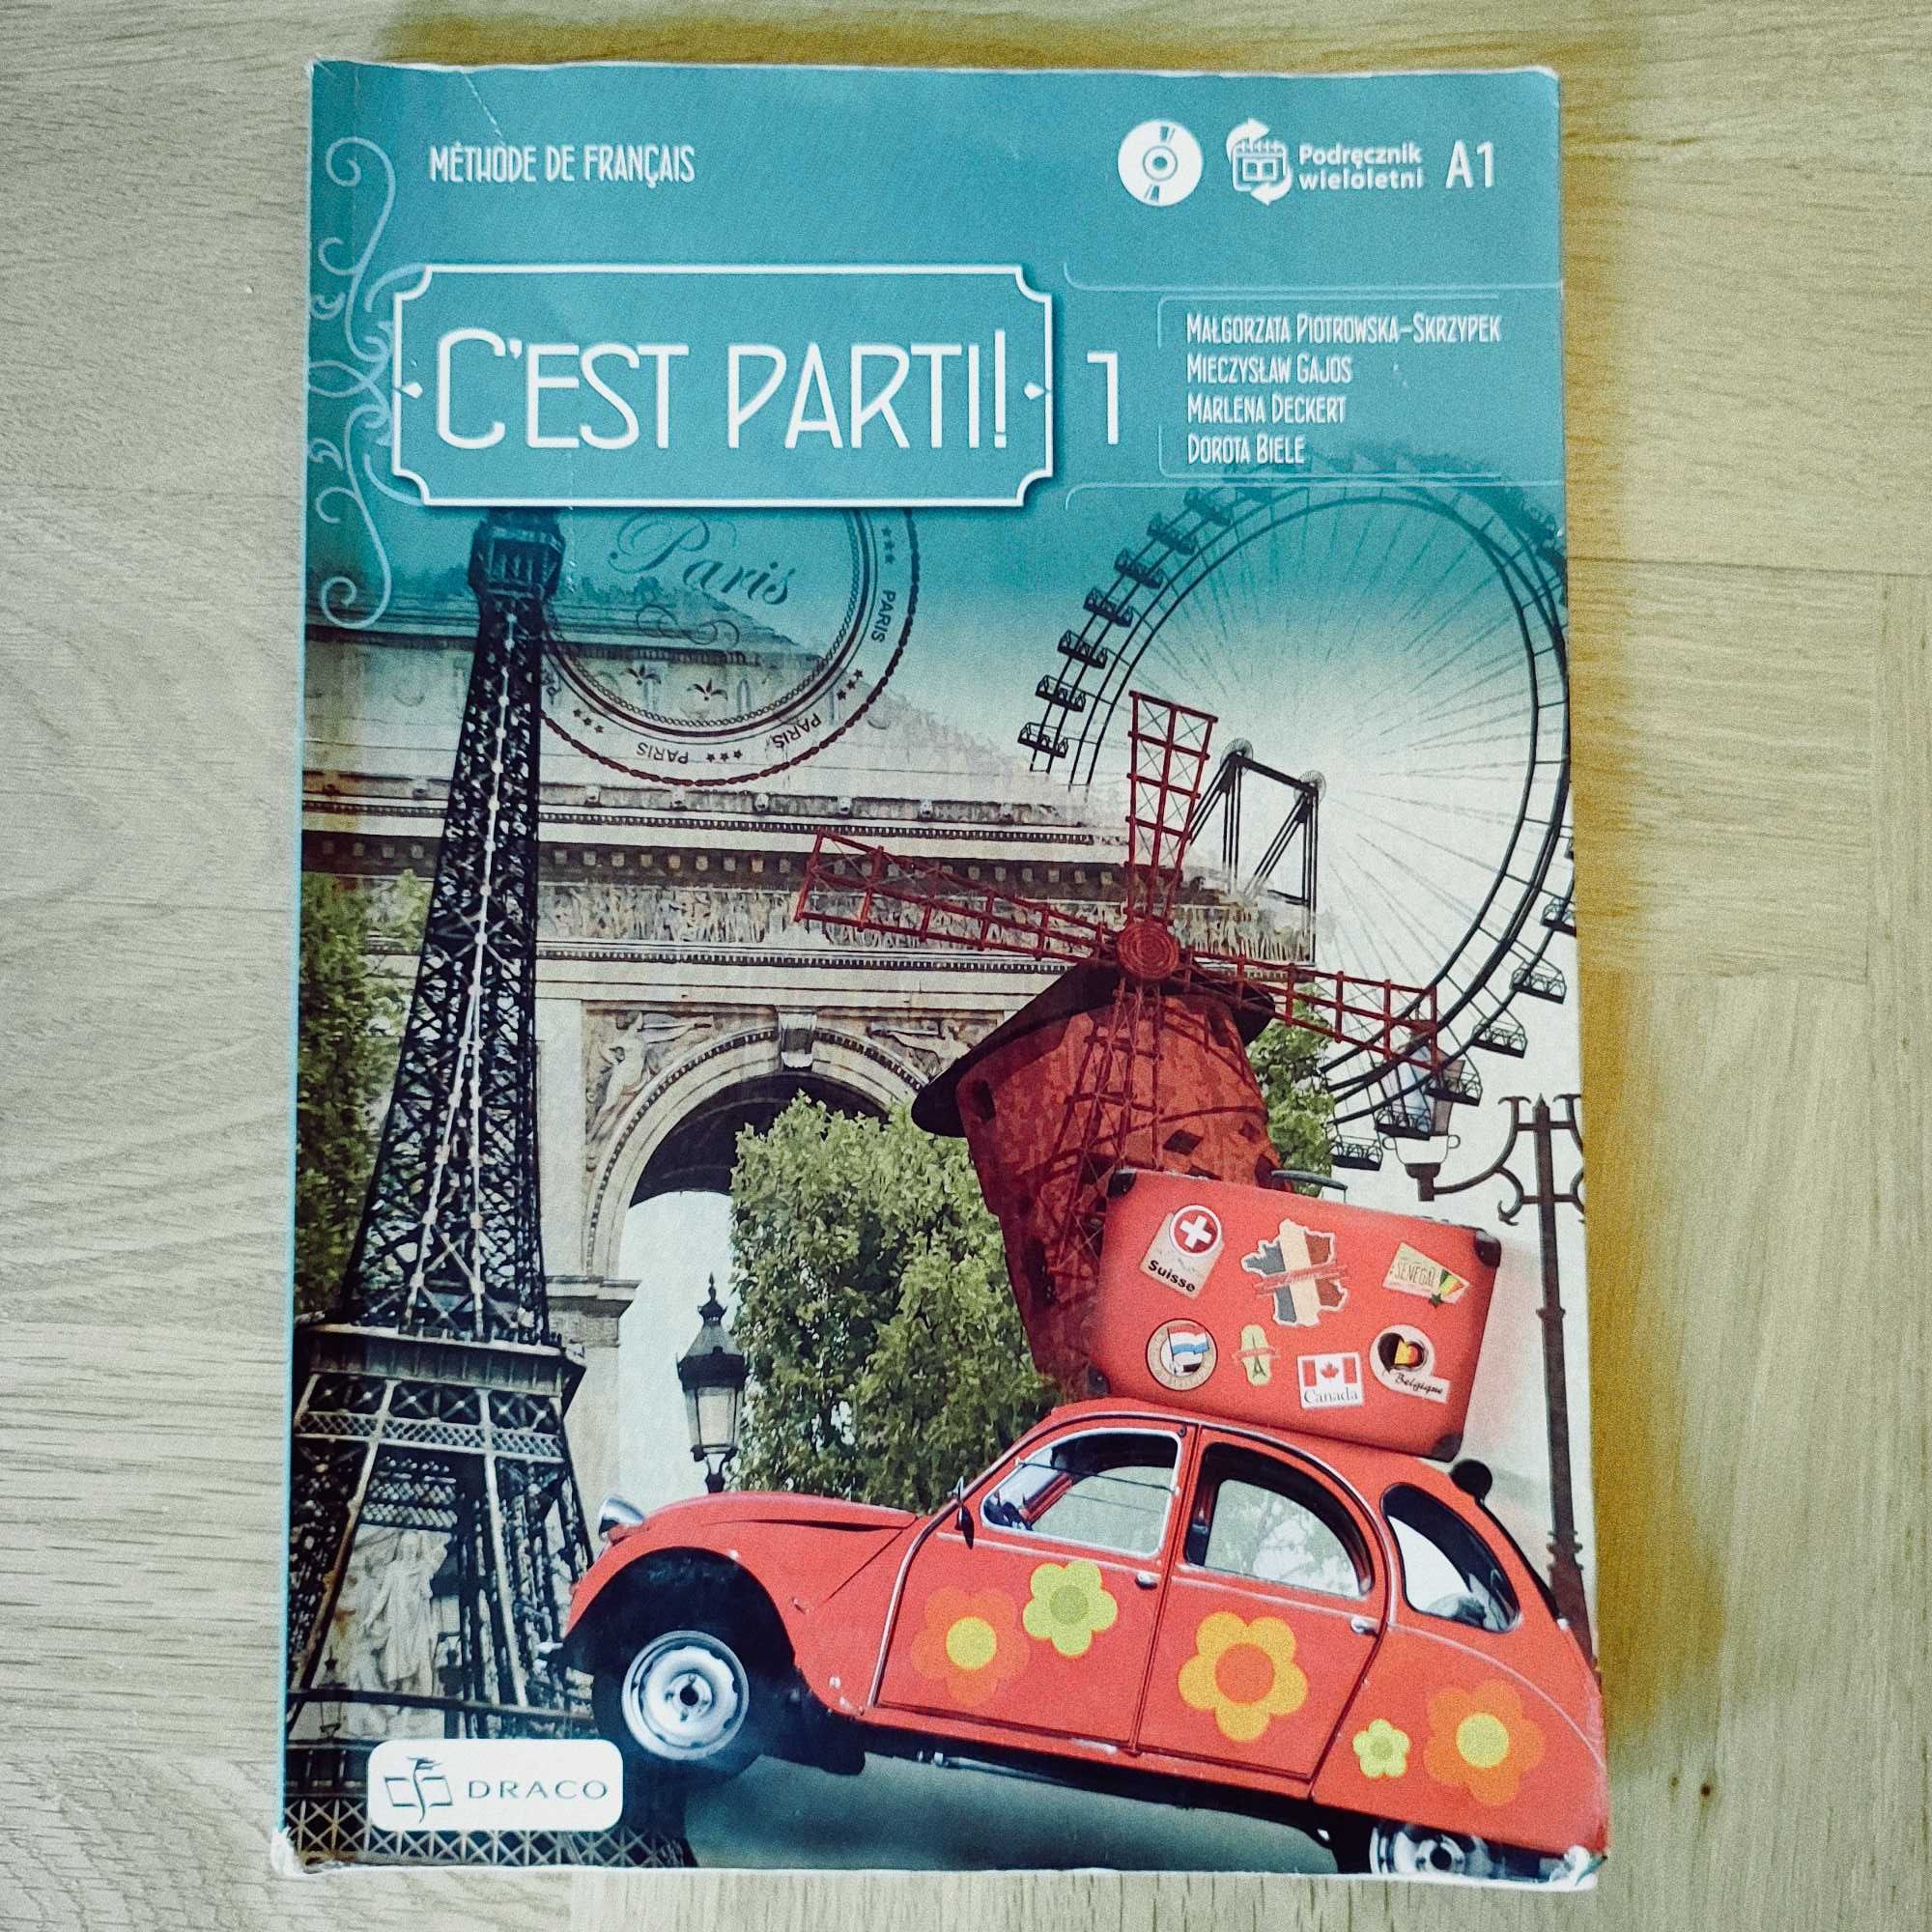 Podręcznik wieloletni jęz. francuski A1 C'est partir! z płytą CD